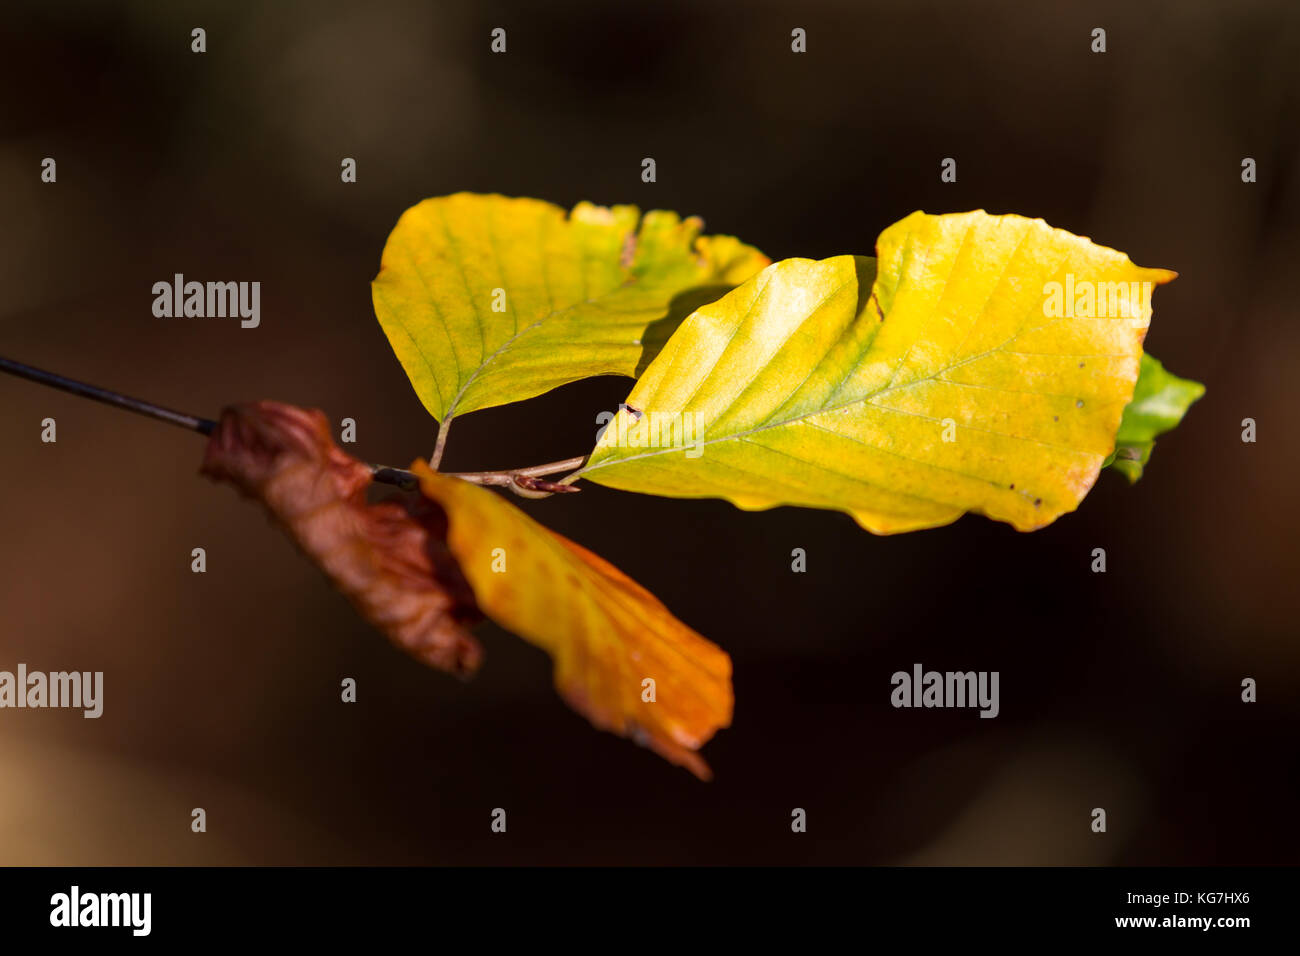 Herbstfarben butes Laub der Buche Stock Photo